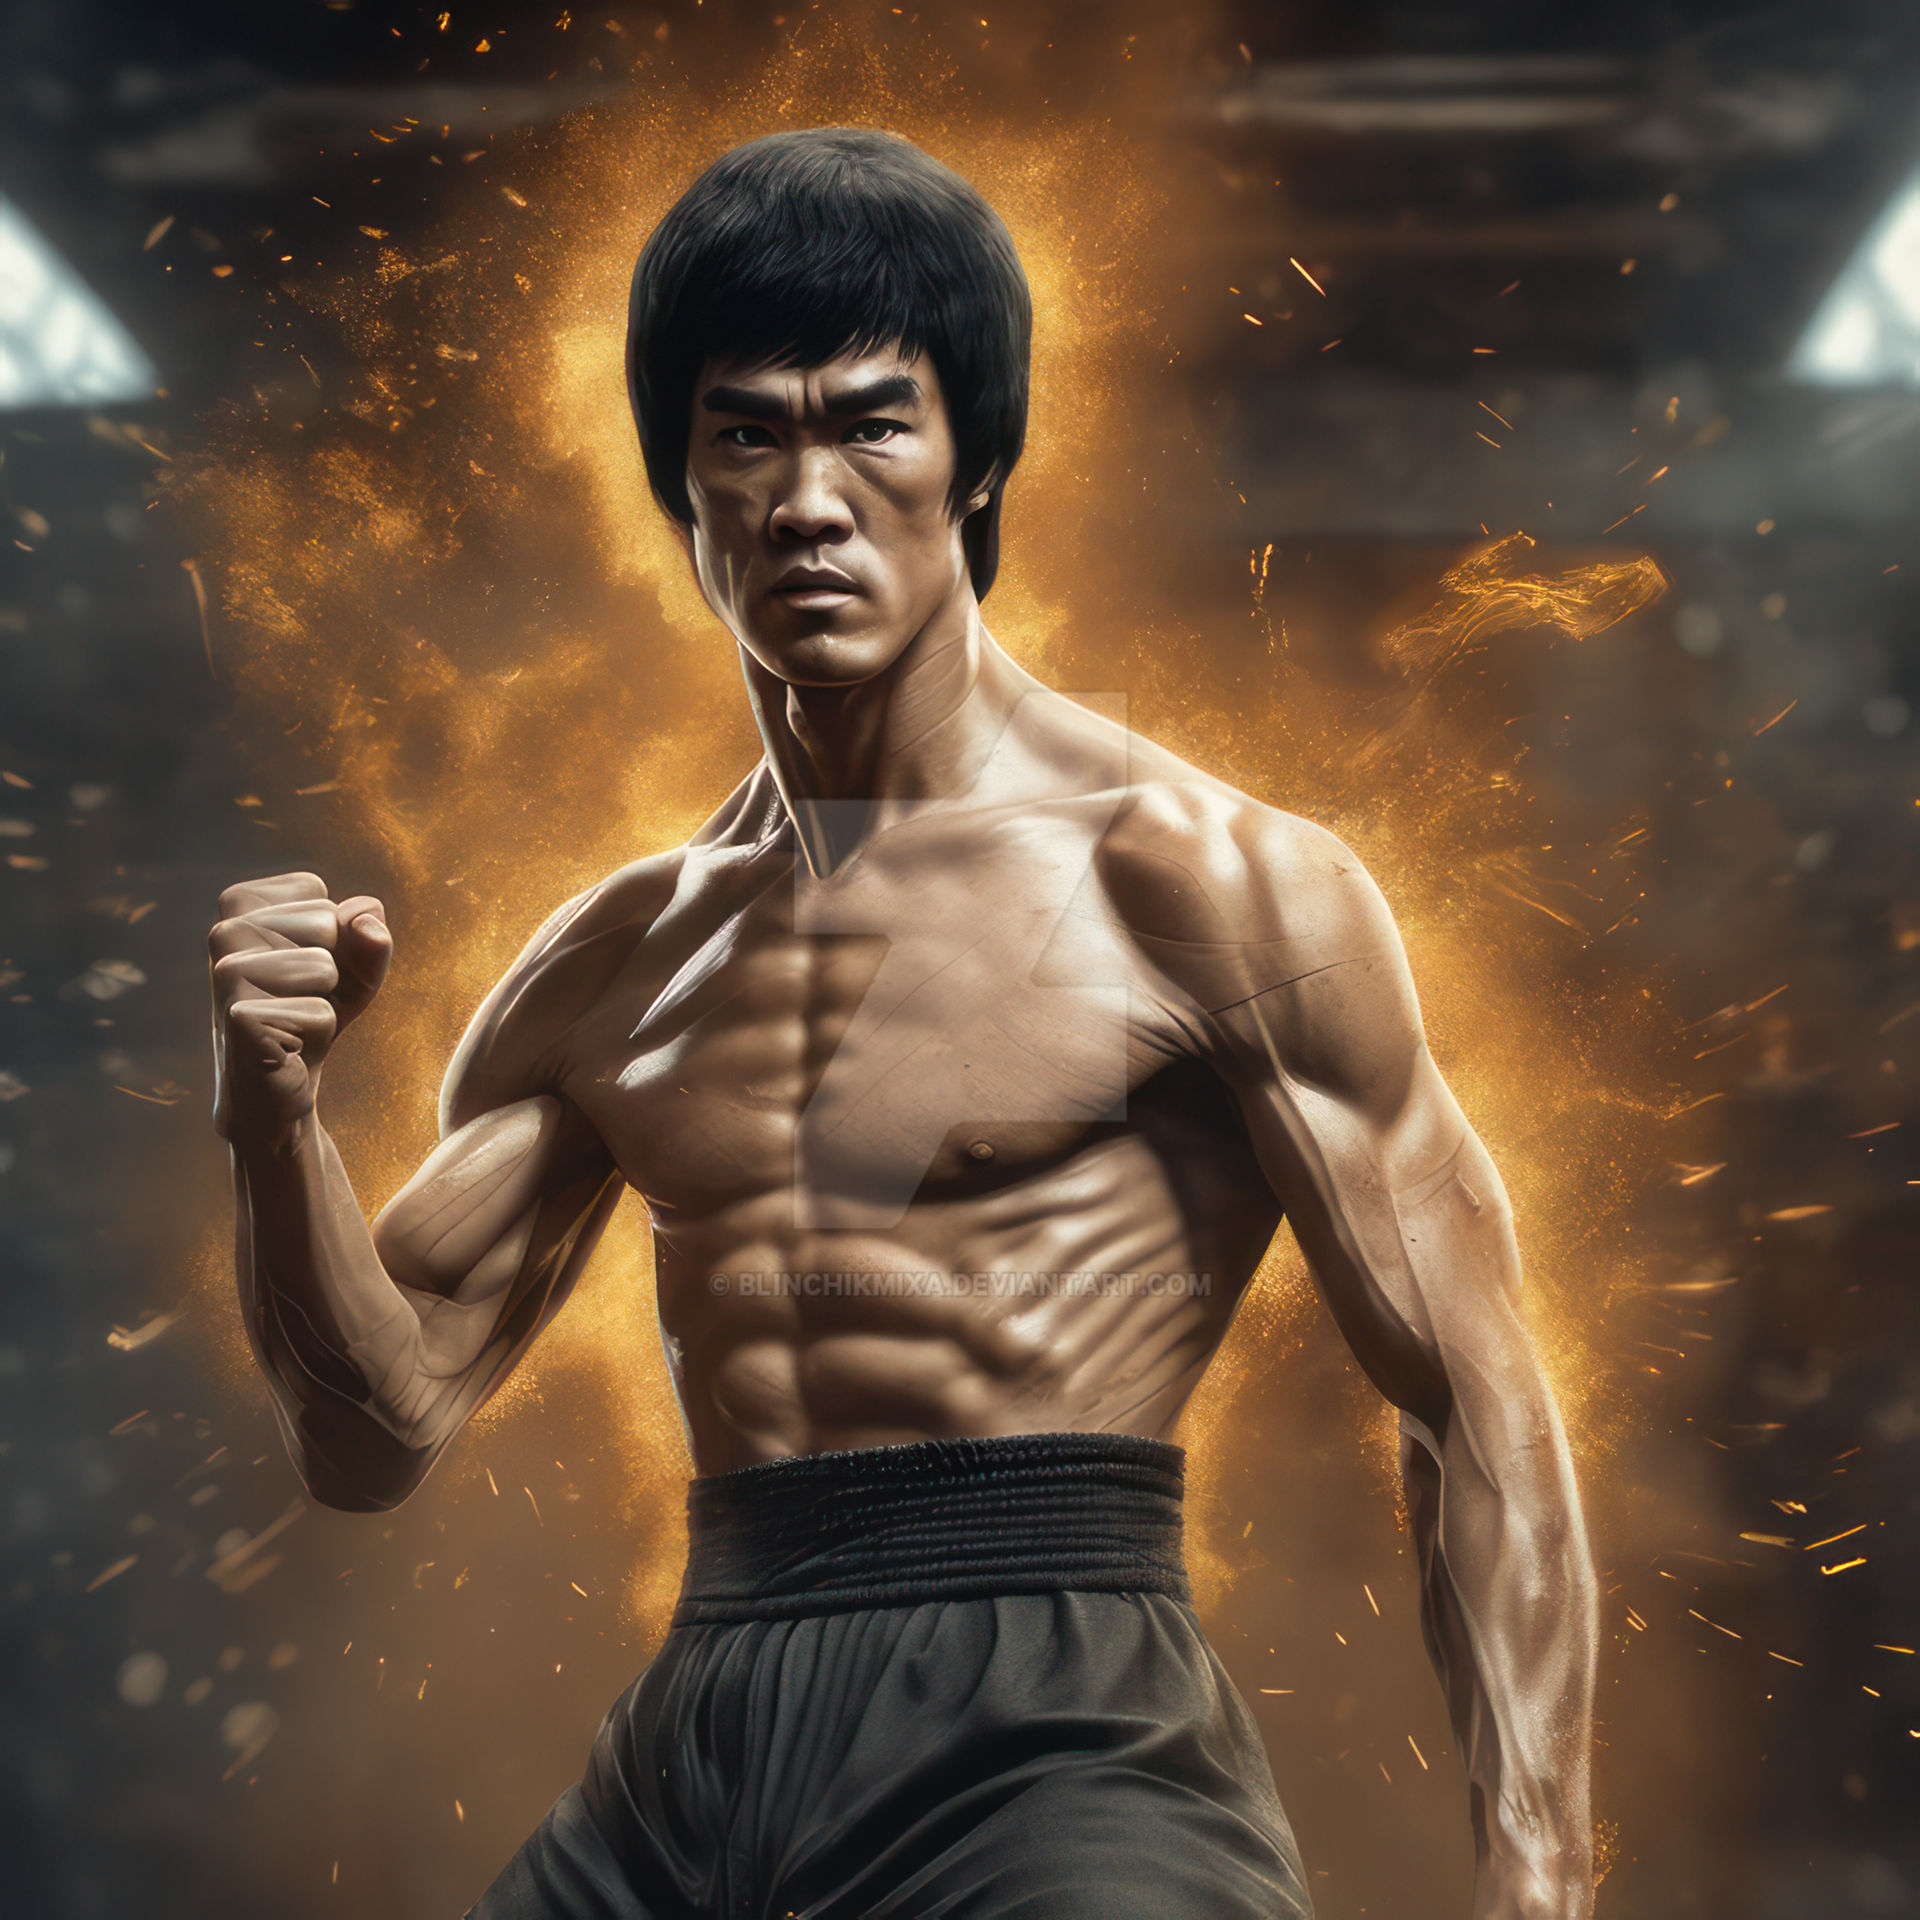 Bruce Lee 18 by blinchikmixa on DeviantArt